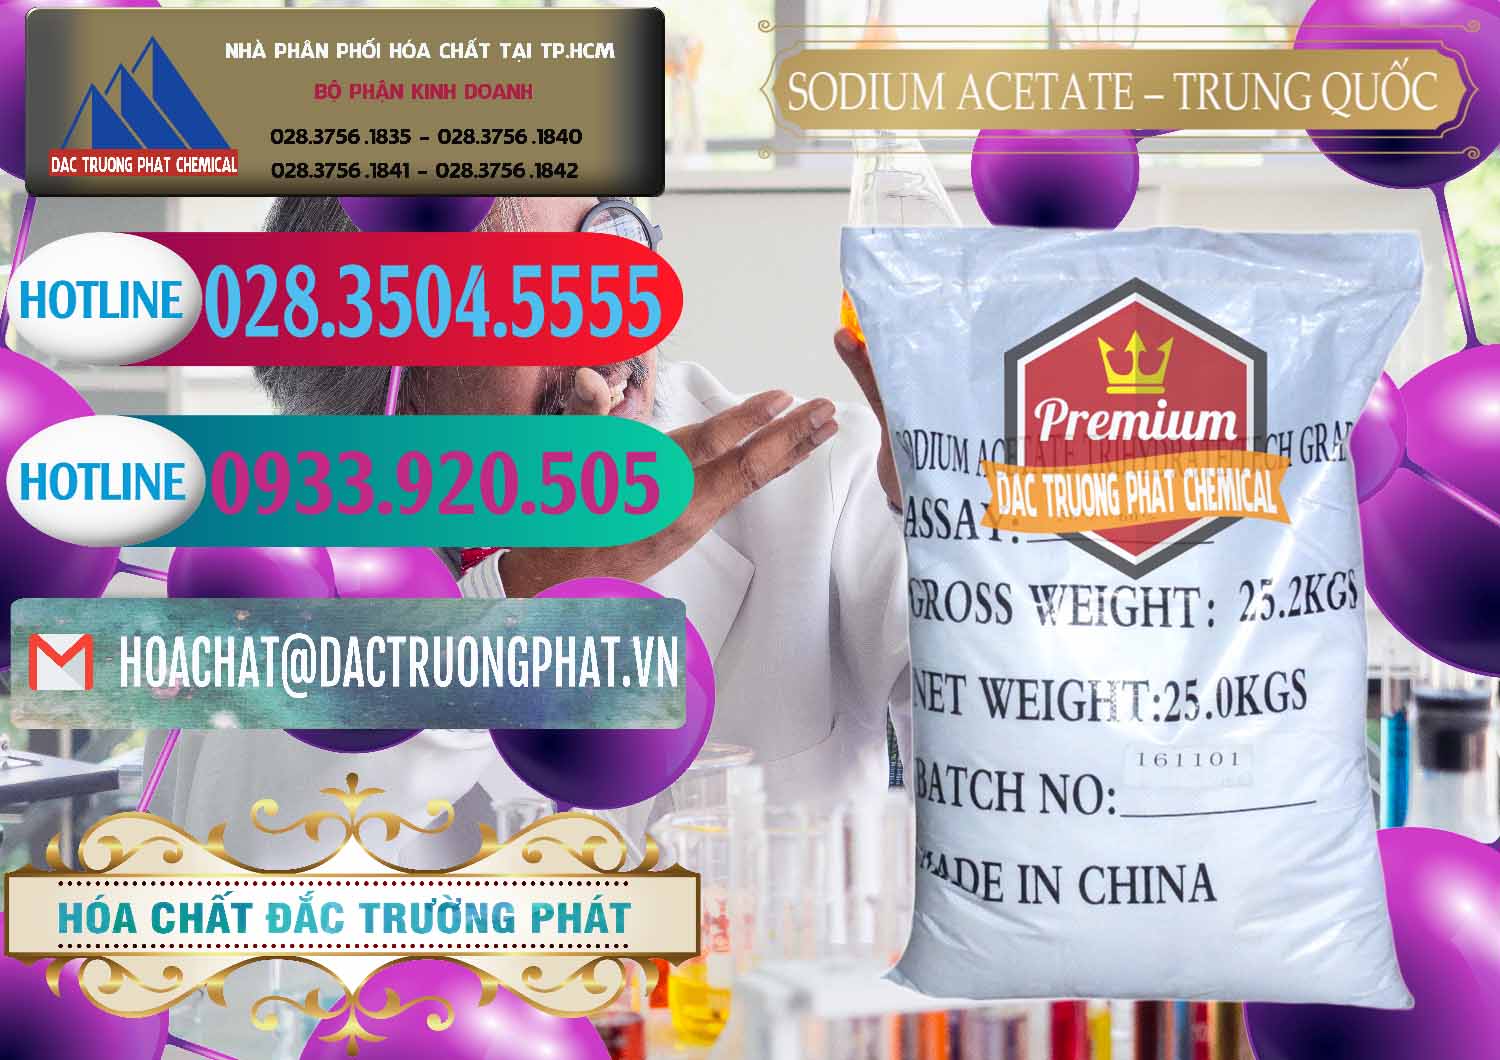 Công ty chuyên bán _ cung cấp Sodium Acetate - Natri Acetate Trung Quốc China - 0134 - Nhà phân phối - bán hóa chất tại TP.HCM - truongphat.vn